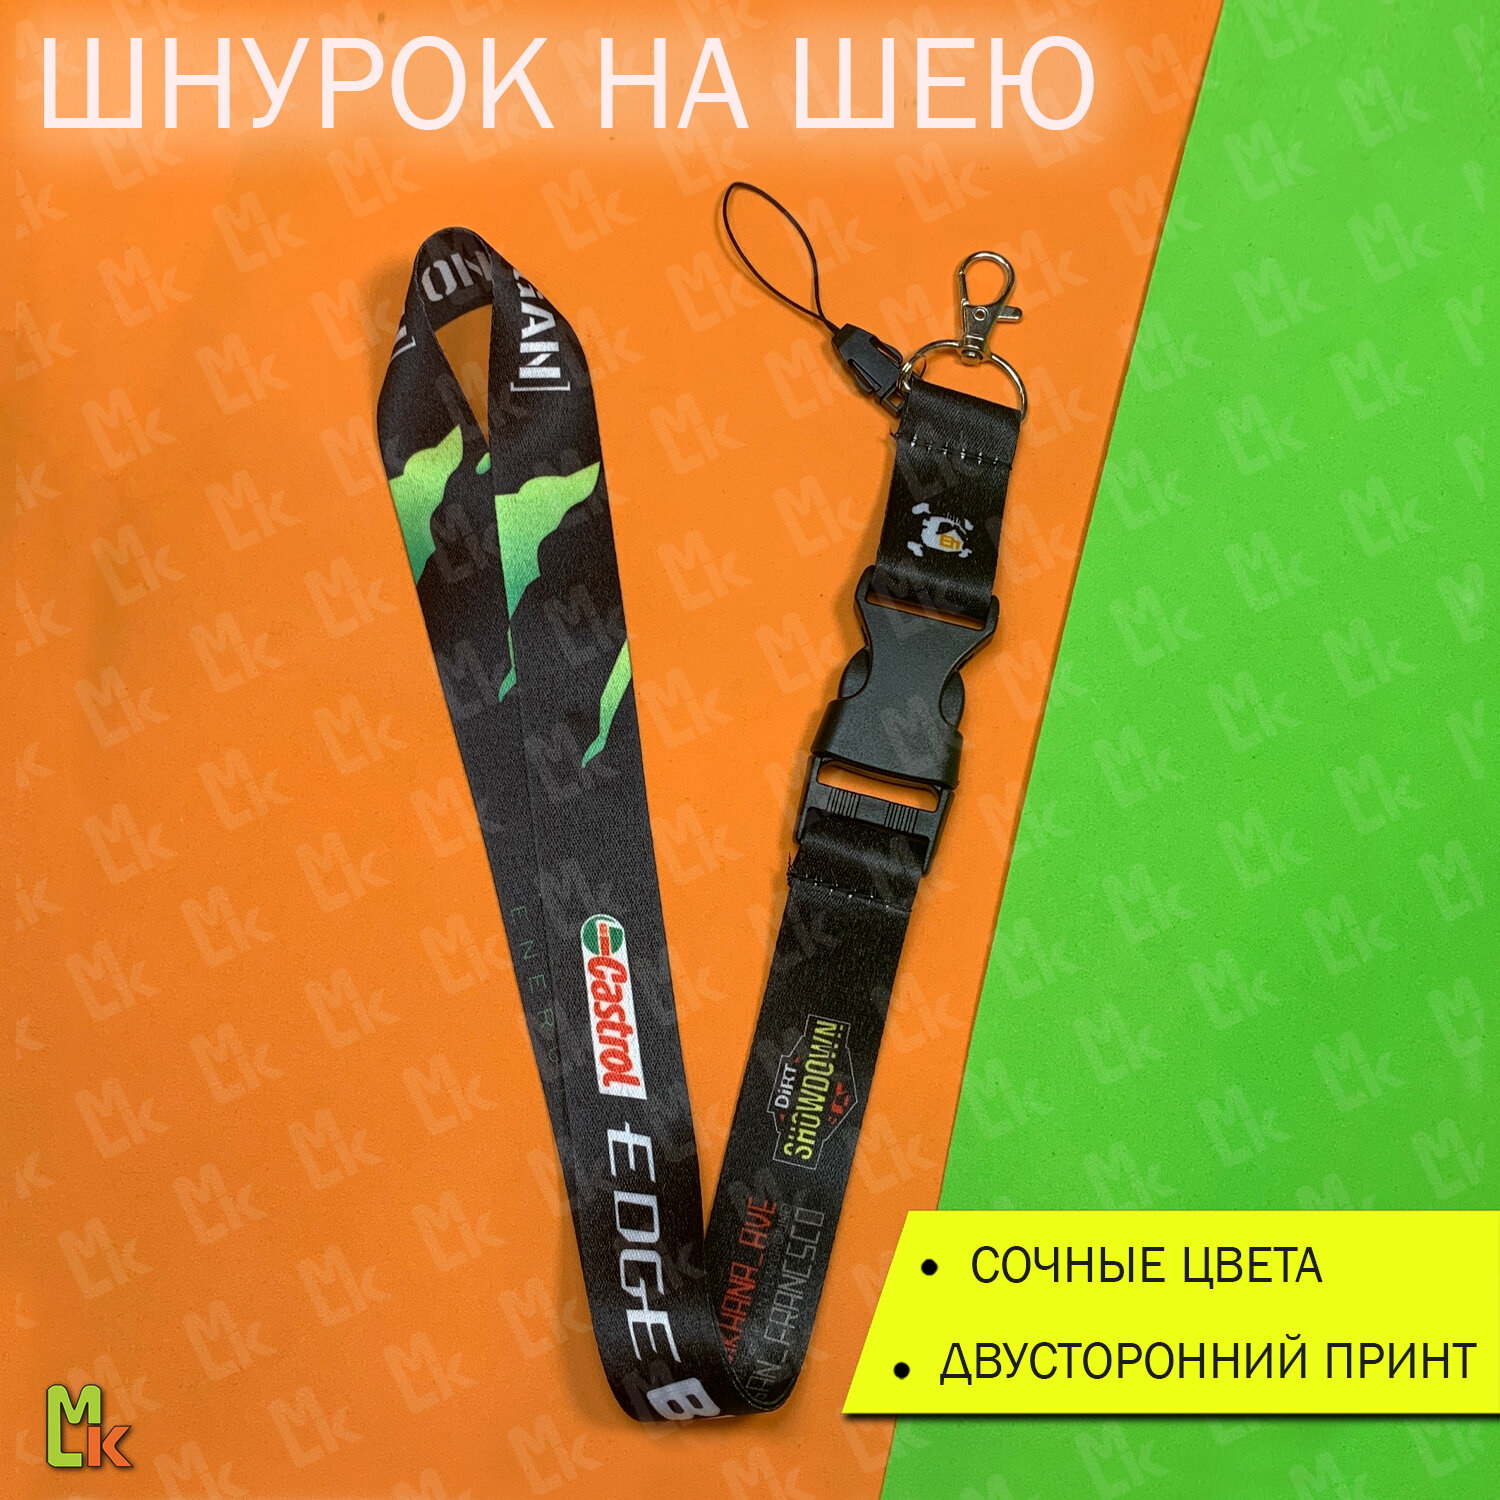 Тканевый шнурок на шею / Mashinokom / для ключей пропуска и бейджа / Логотипы  черный